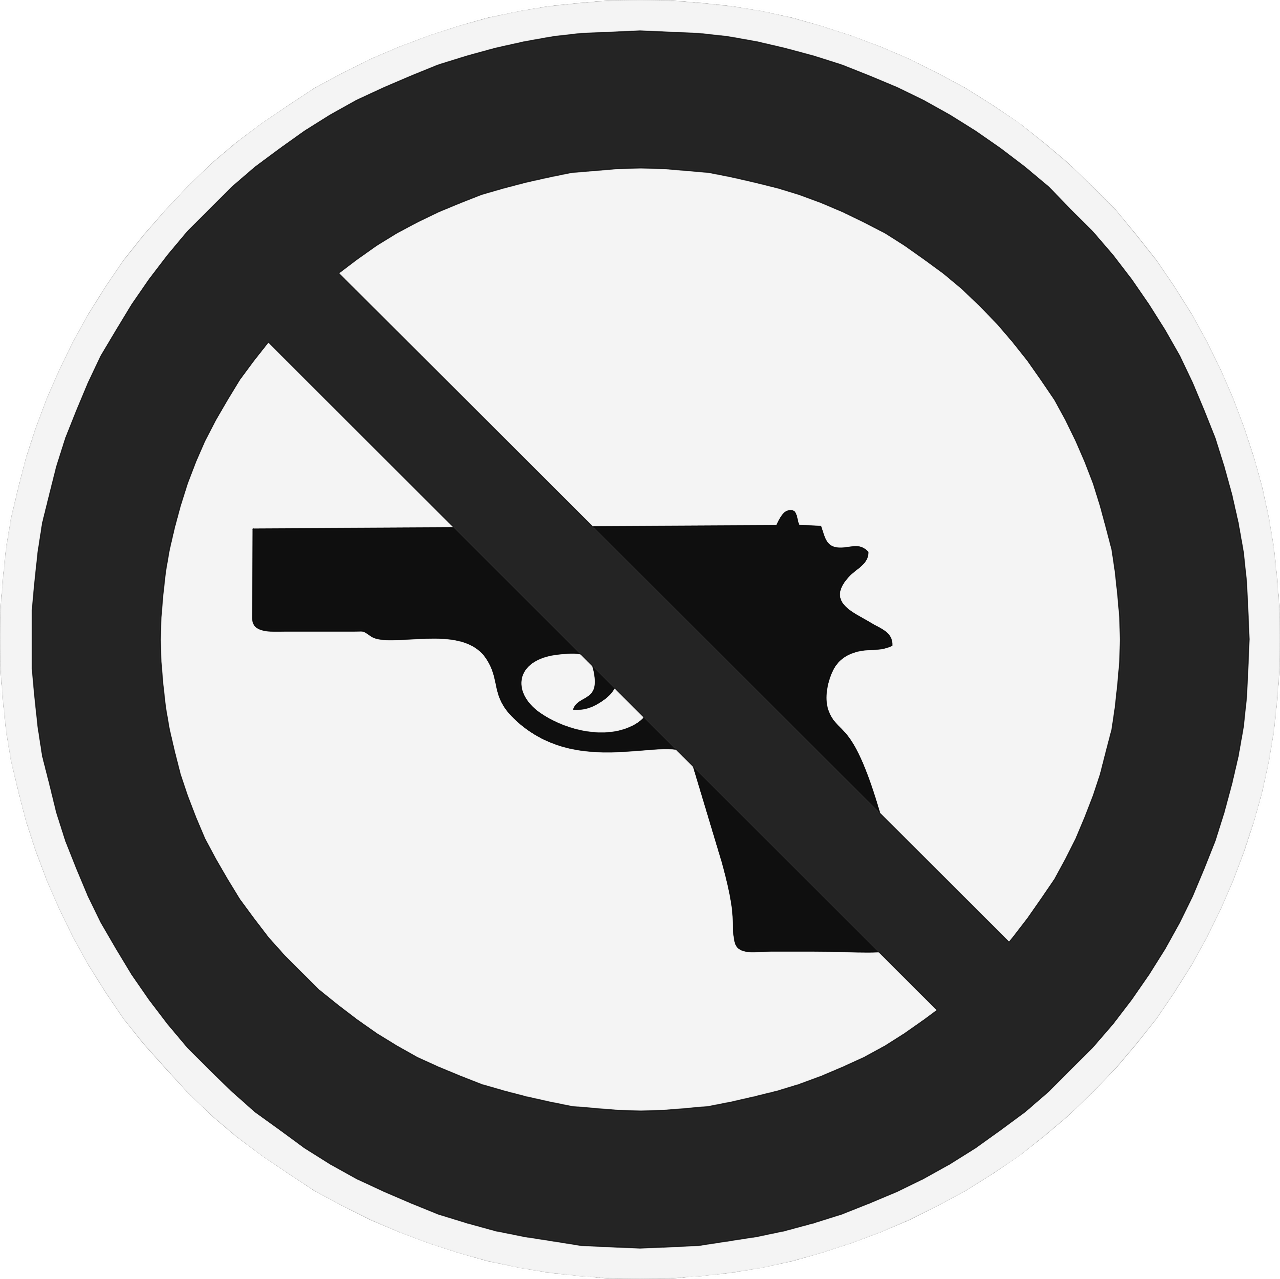 Prohibited Possessor Gun Black And White 1283412 1280 - Charing Cross Tube Station (1280x1279)